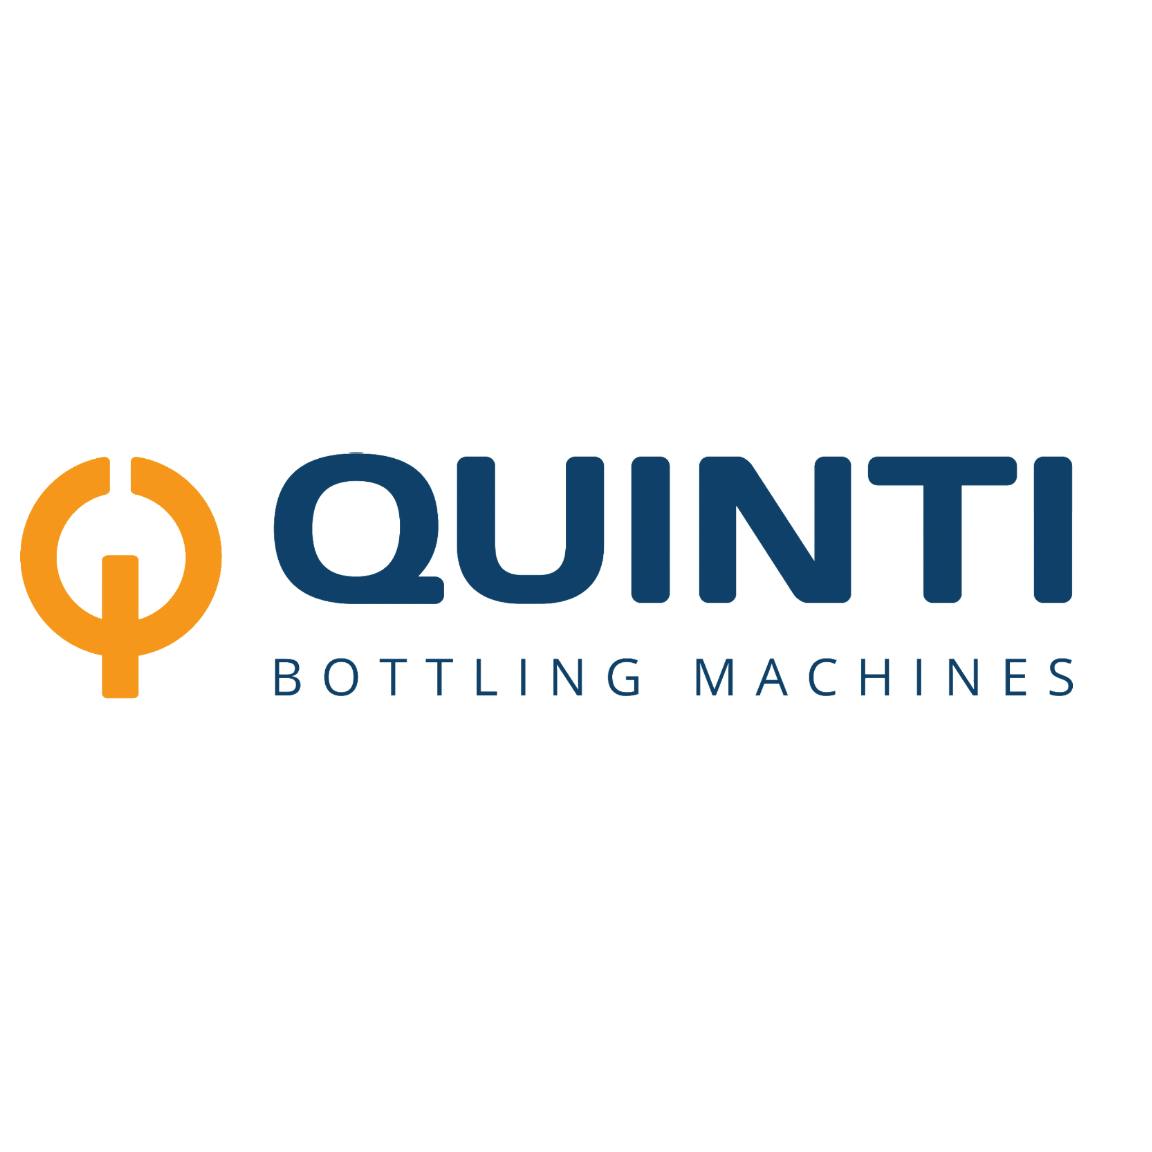 Il logo di Quinti Bottling Machines, con testo di colore blu, preceduto da una grande Q colore arancione